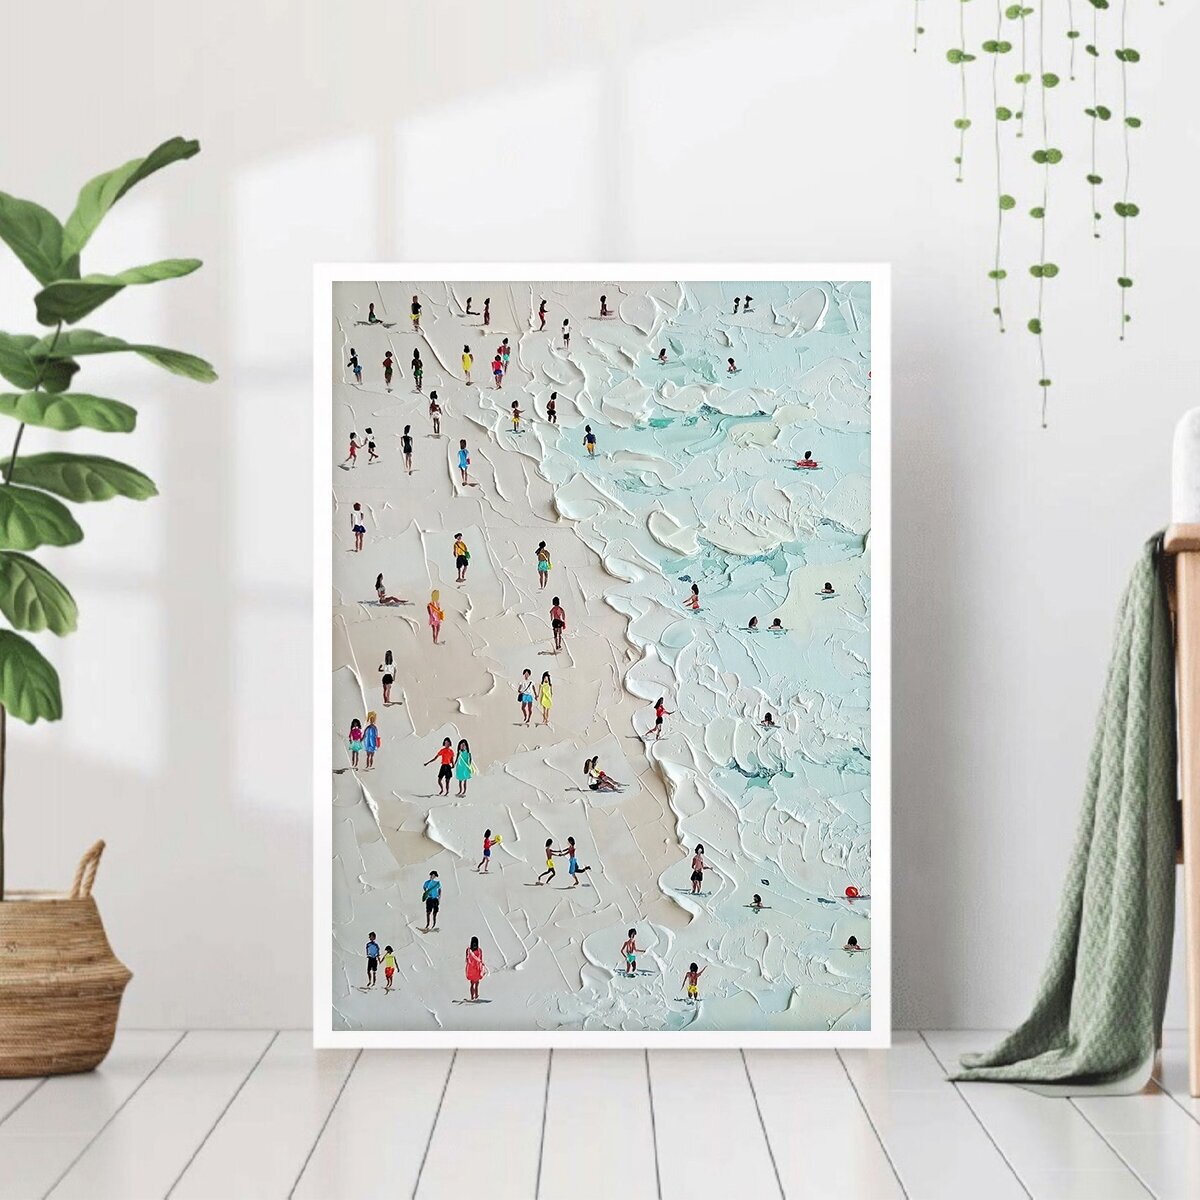 Постер "Люди на пляже" 40 на 50 в белой рамке / Картина для интерьера / Плакат / Постер на стену / Интерьерные картины